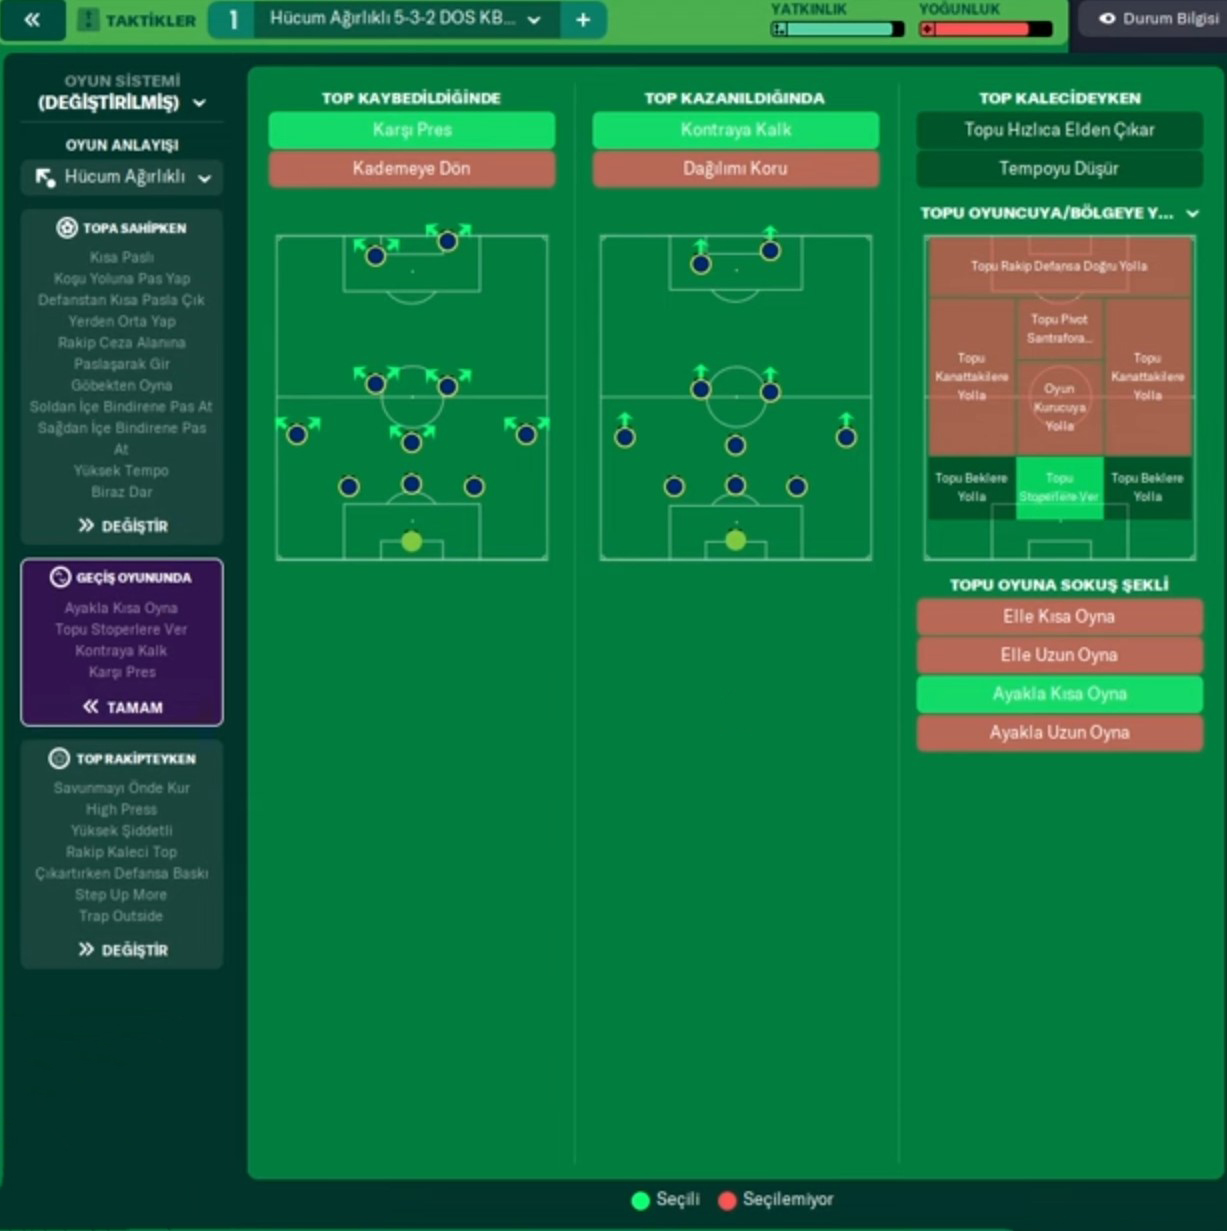 Fenerbahçe Jorge Jesus Taktiği 5-3-2 Geçiş Oyununda